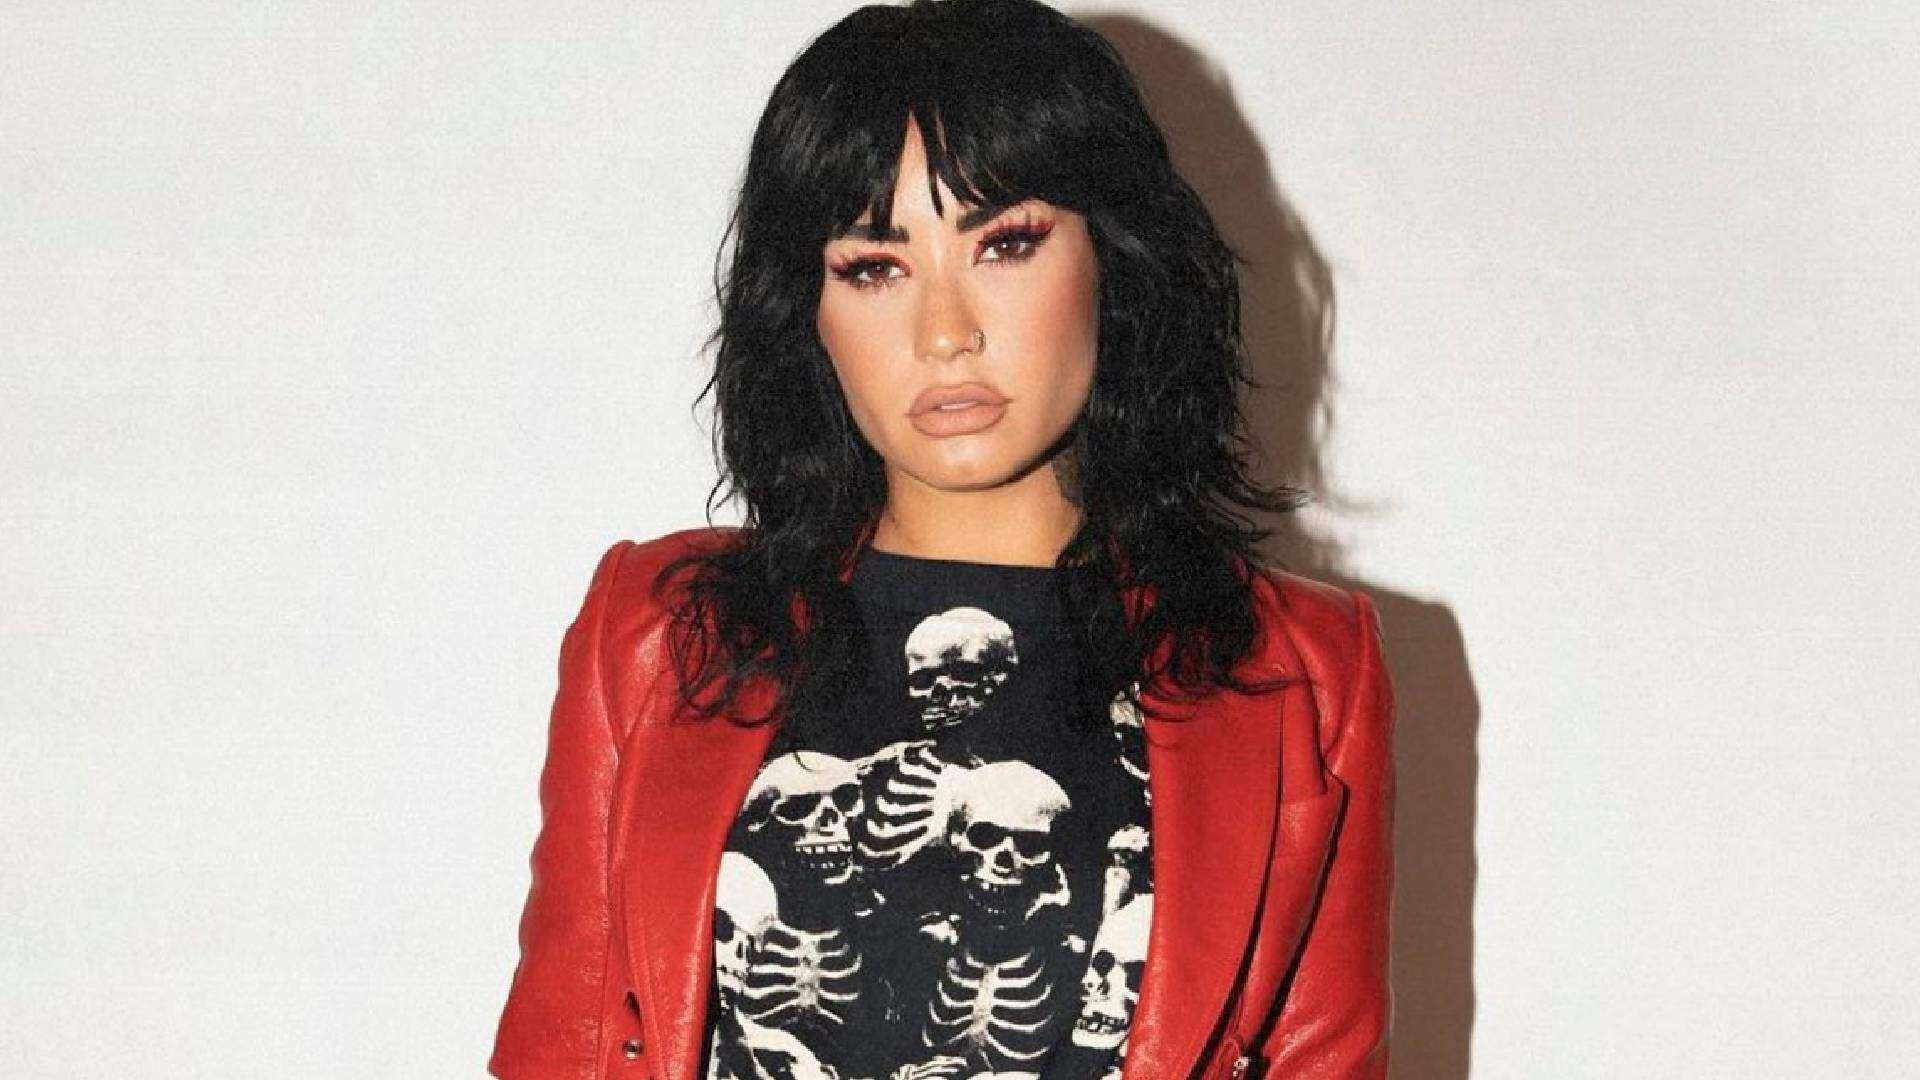 Demi Lovato no Brasil: o que podemos esperar dos shows da artista? - Metropolitana FM